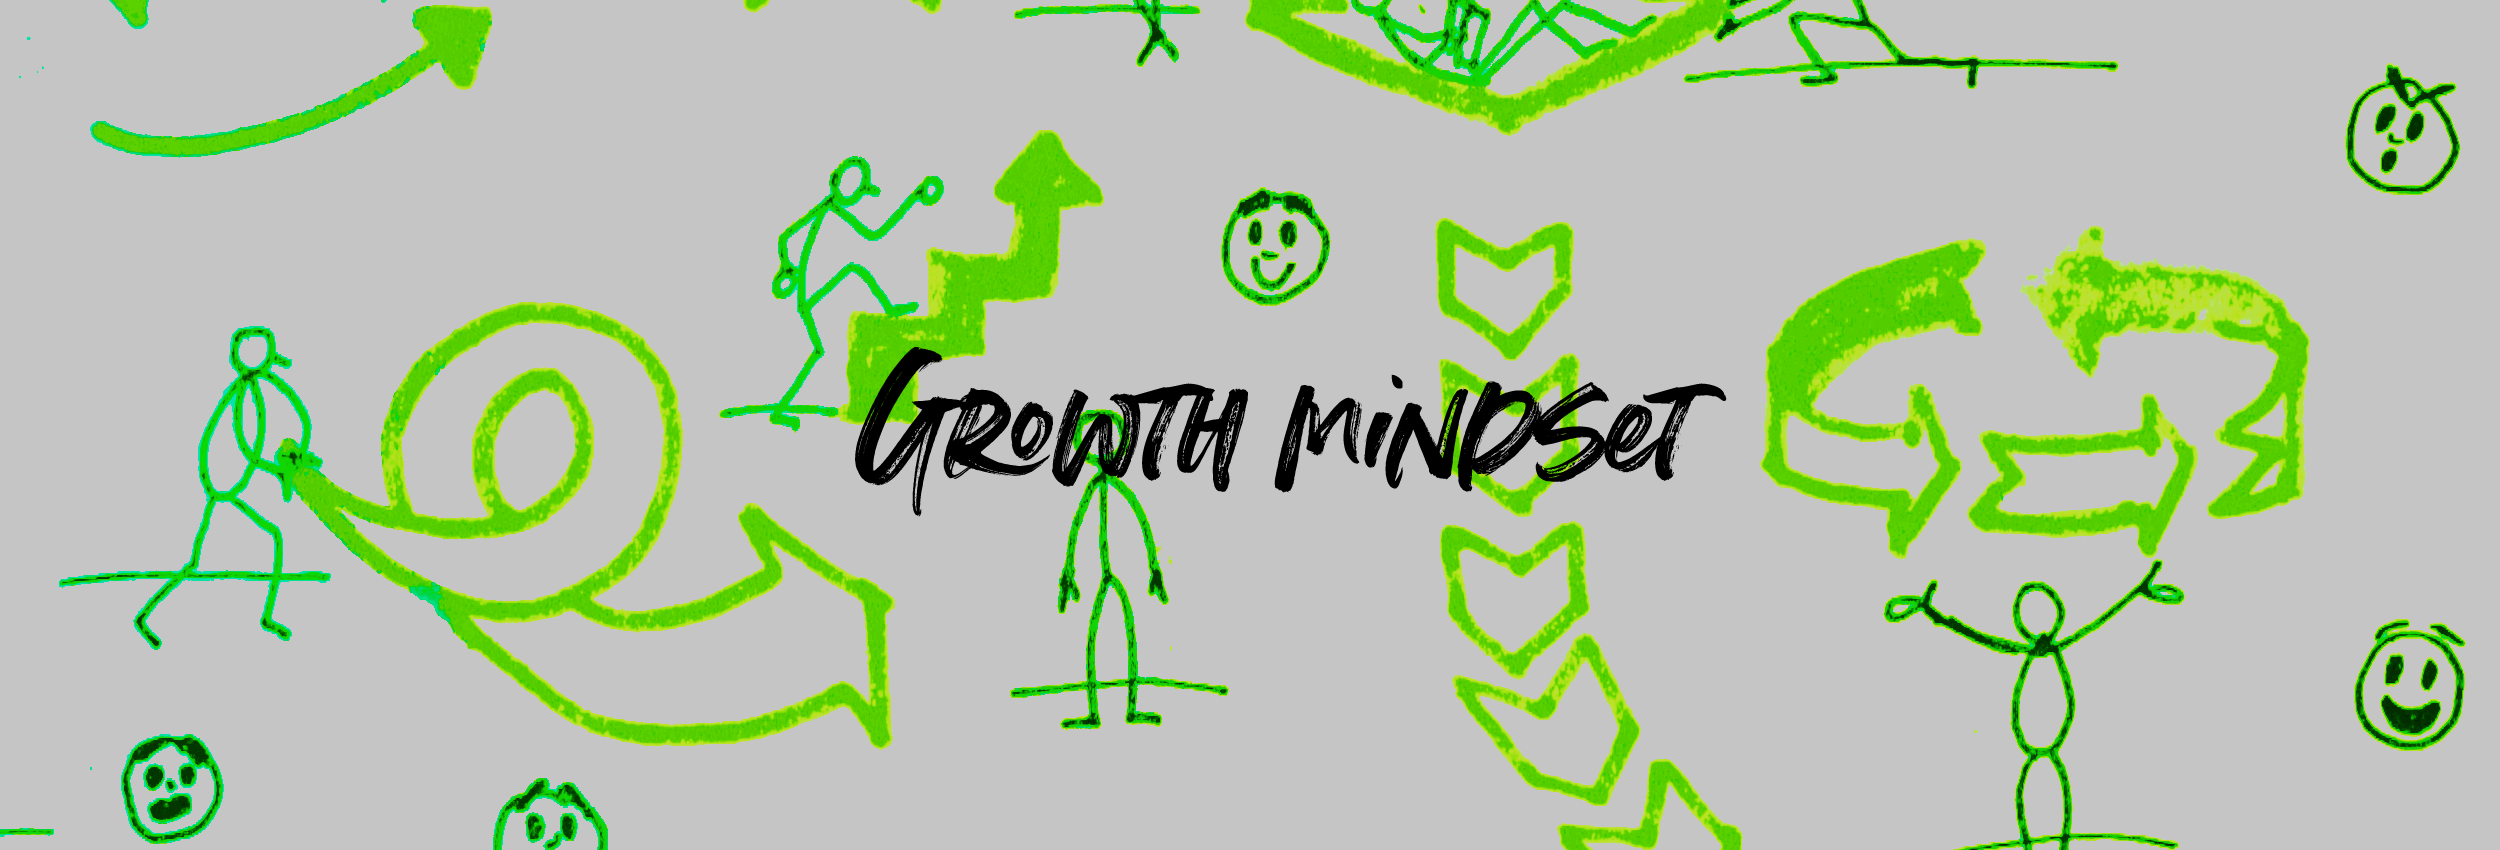 Growth mindset training